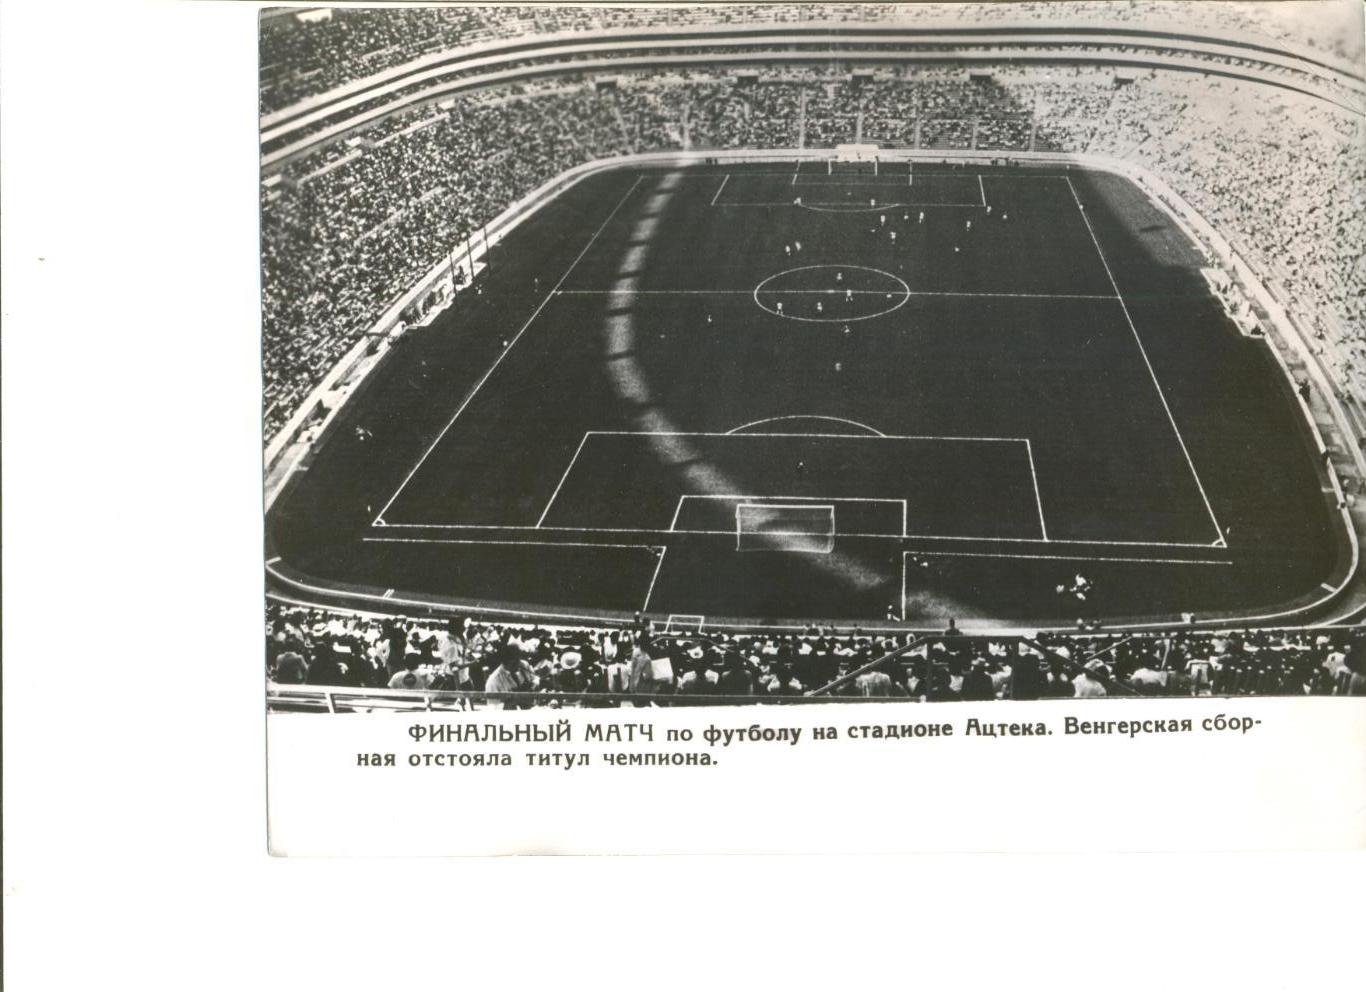 Фото Стадион Ацтека (Мехико). Финальный матч Олимп. турнира по футболу 1968 г.